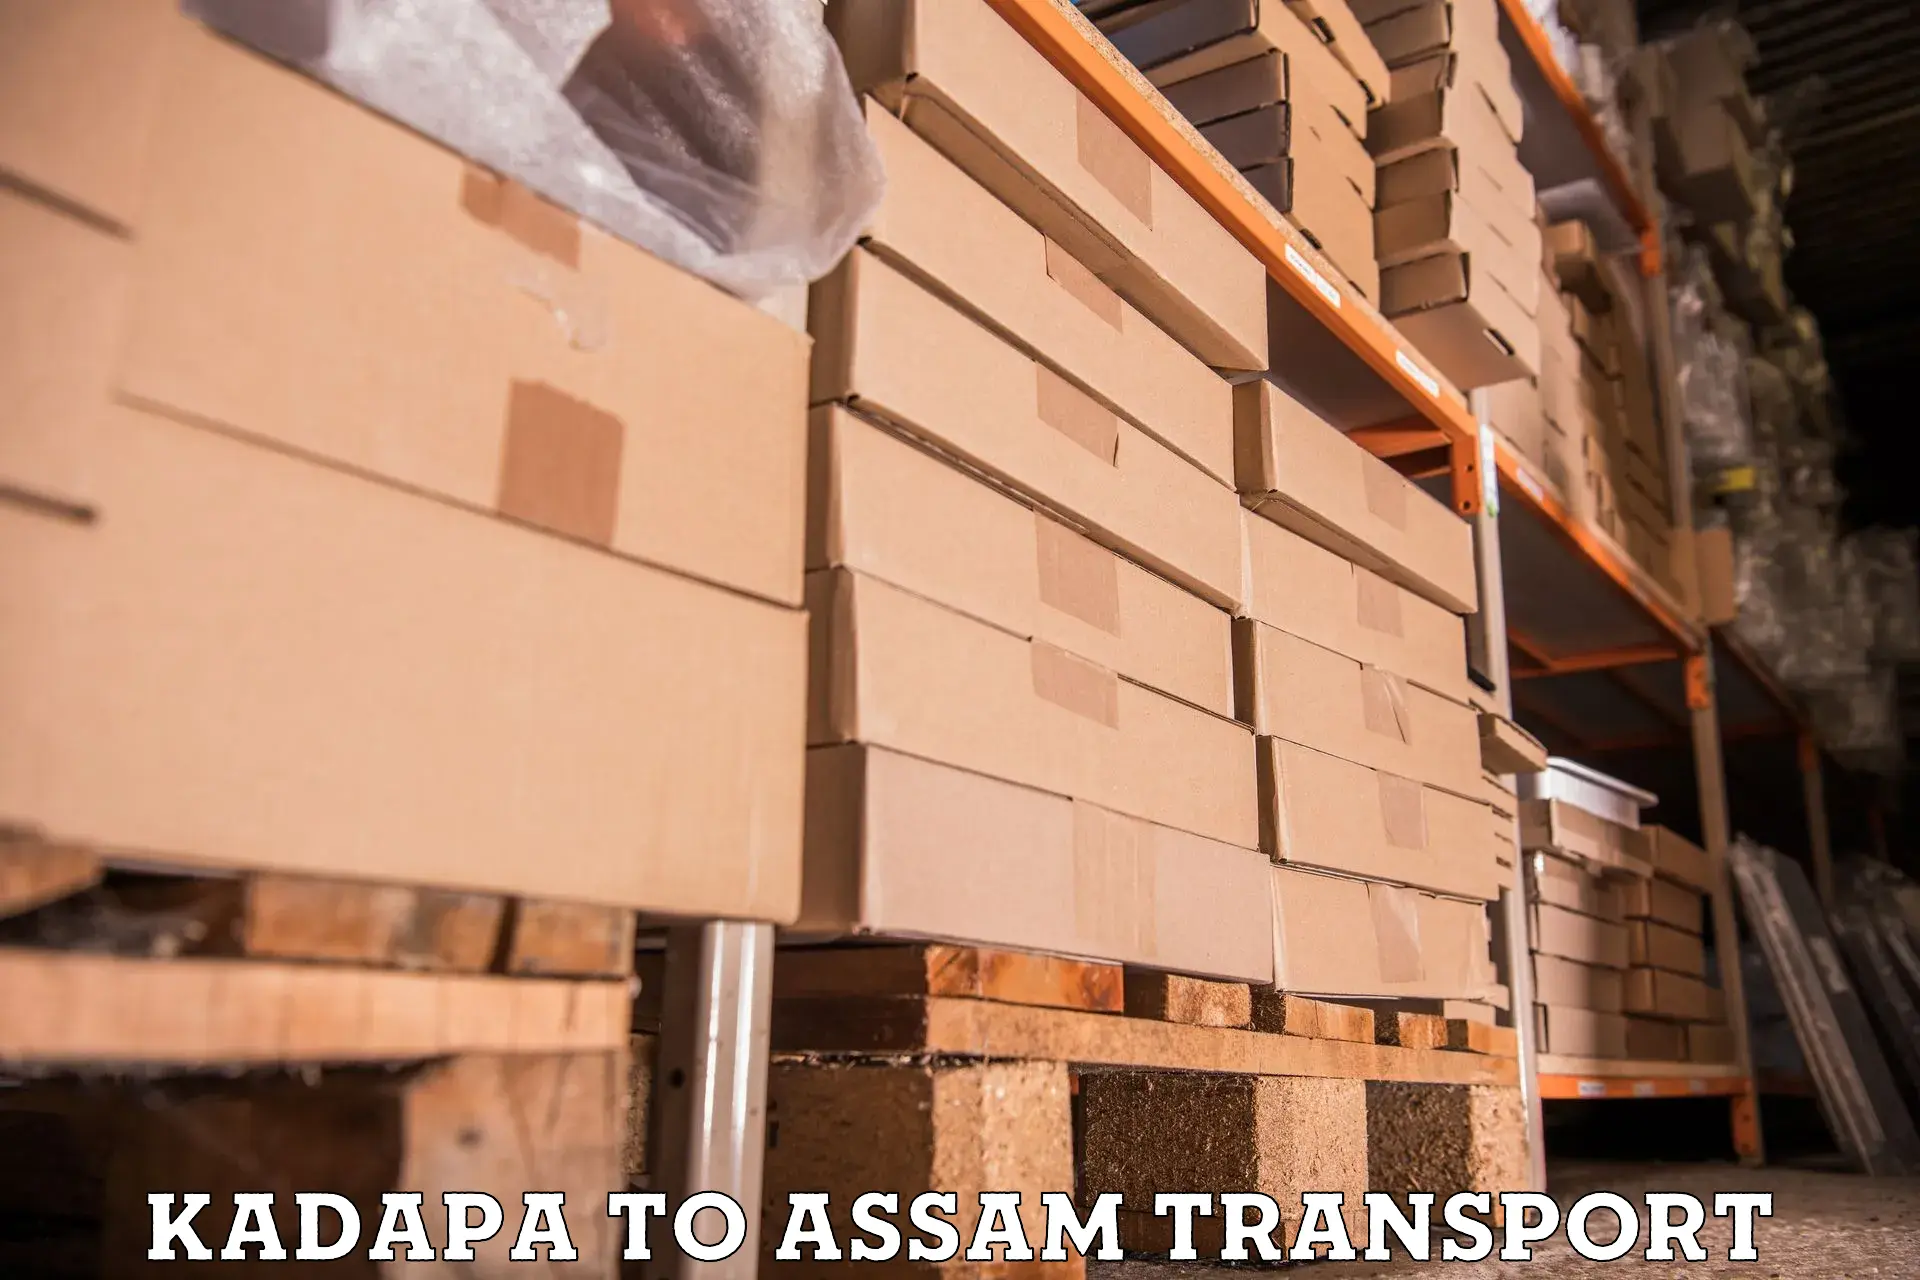 Furniture transport service Kadapa to Khetri